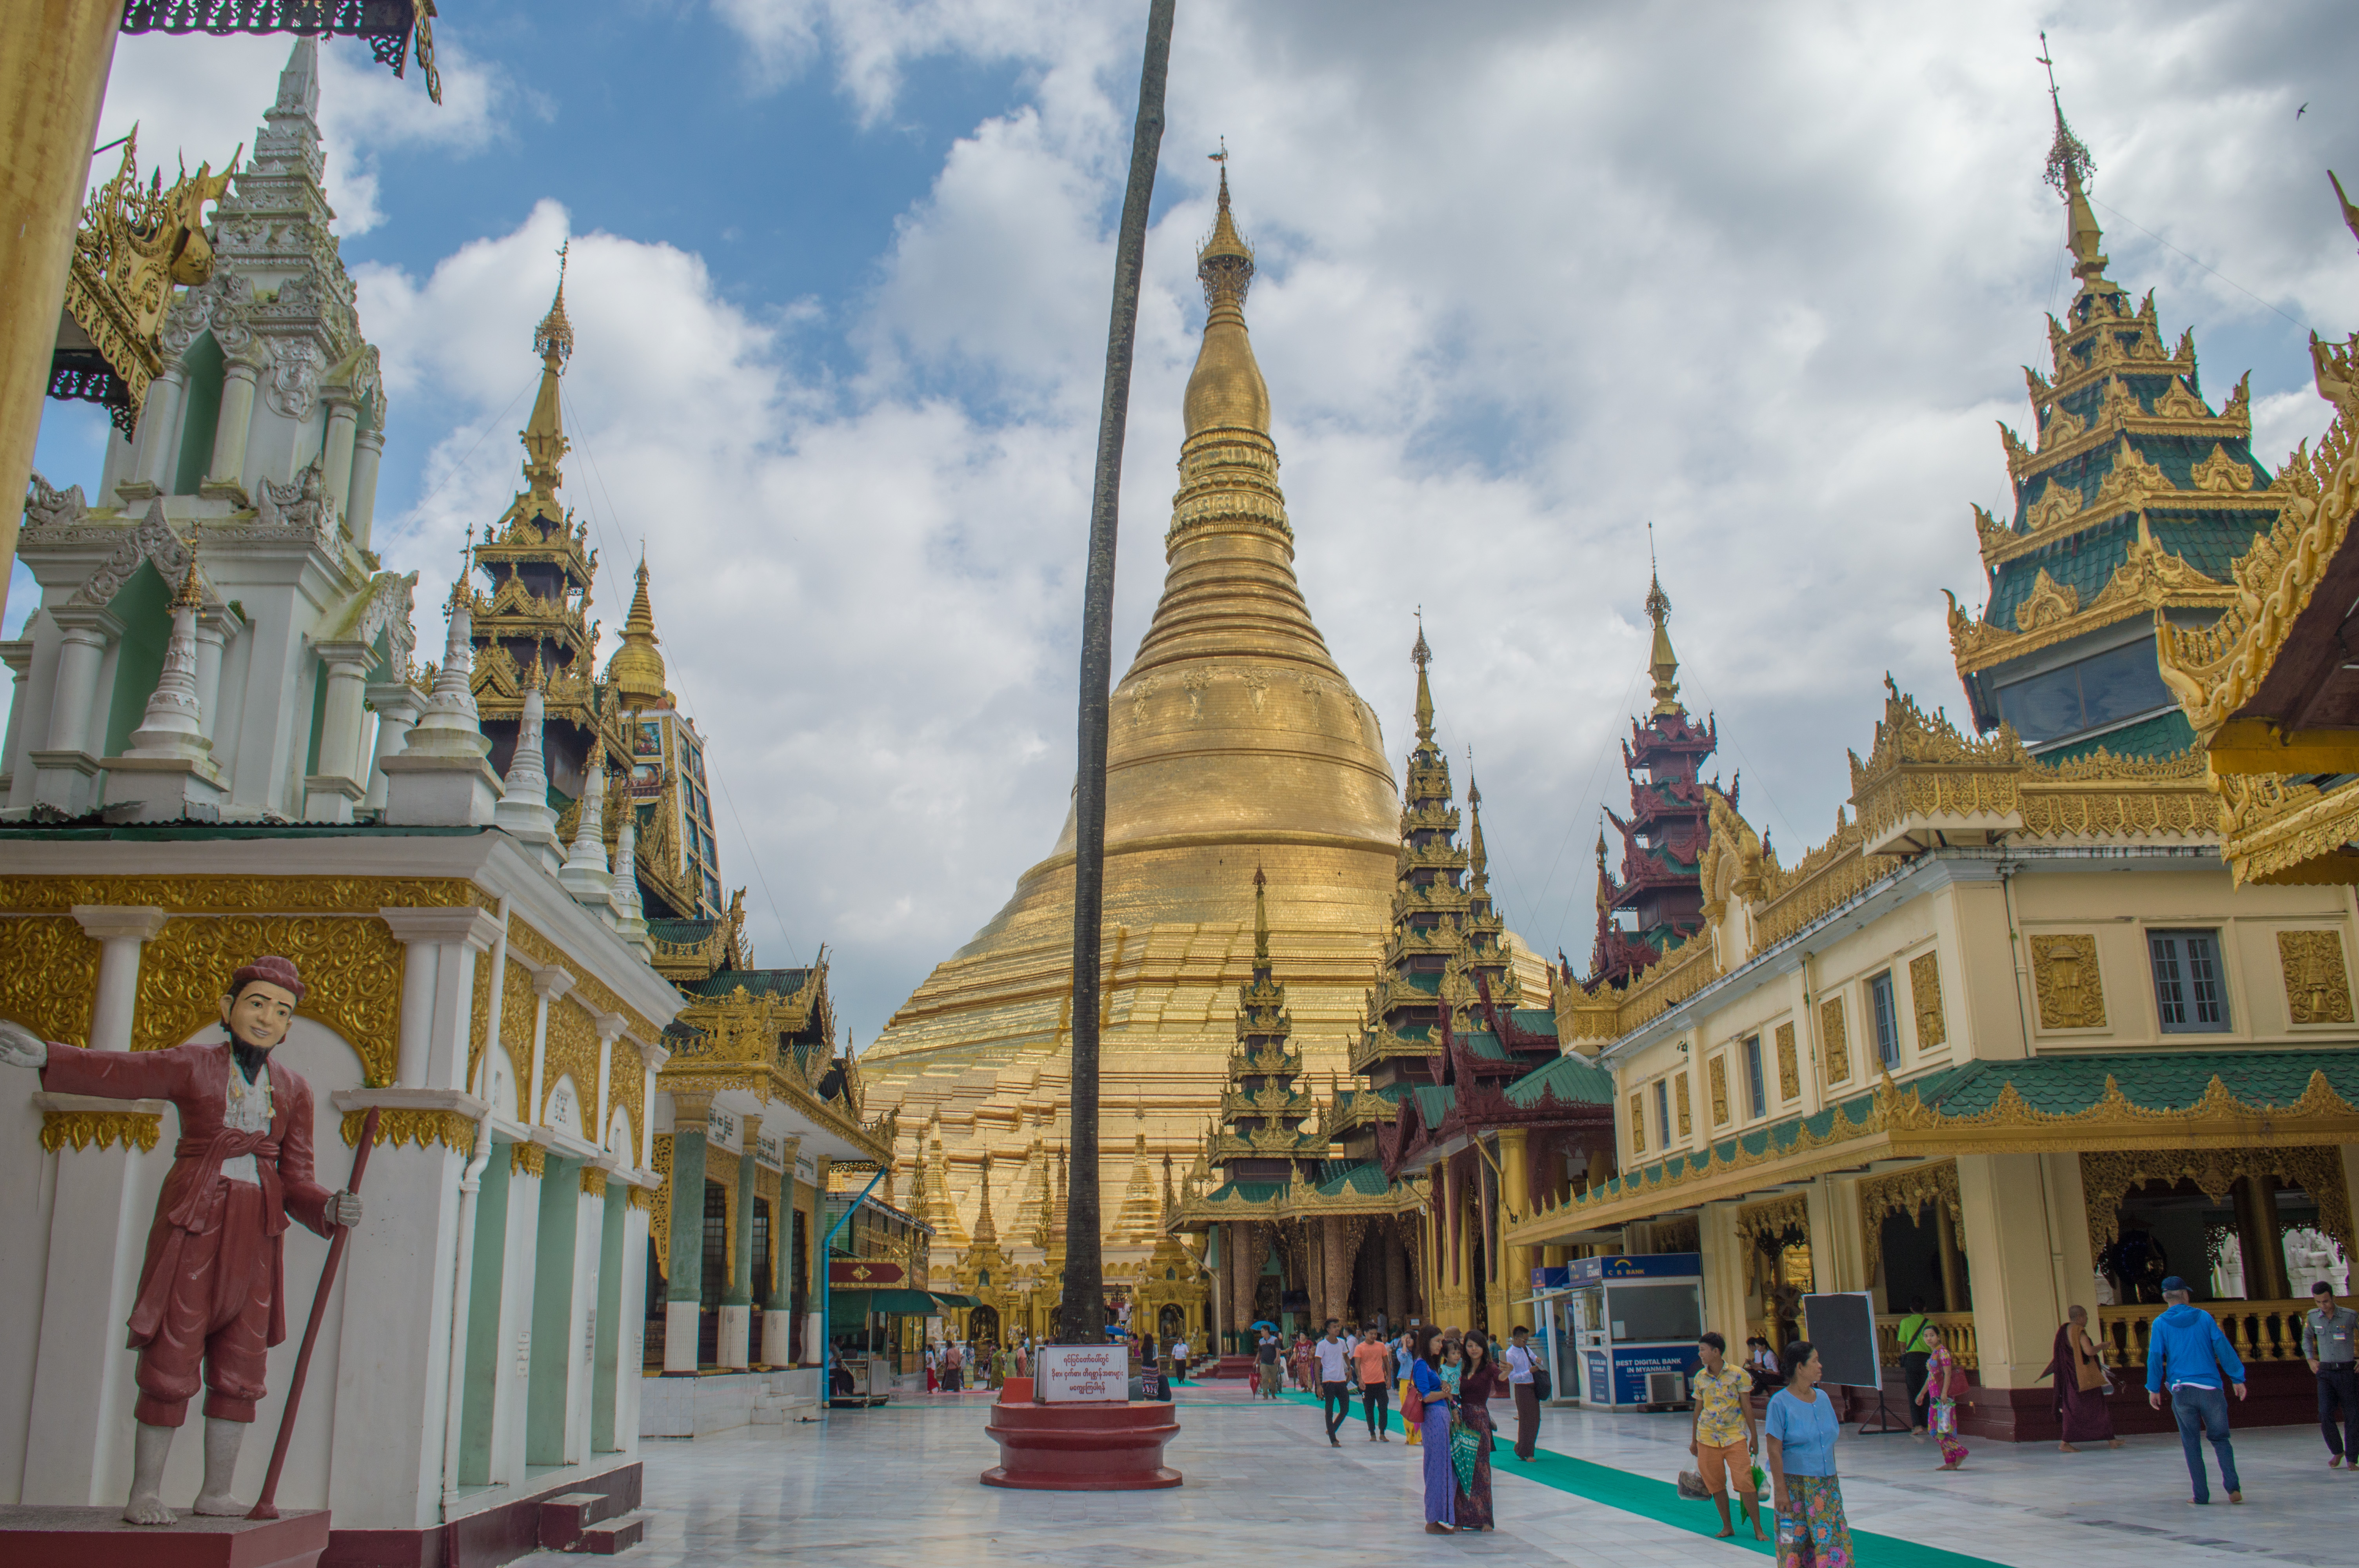 Schwedagon Pagoda1